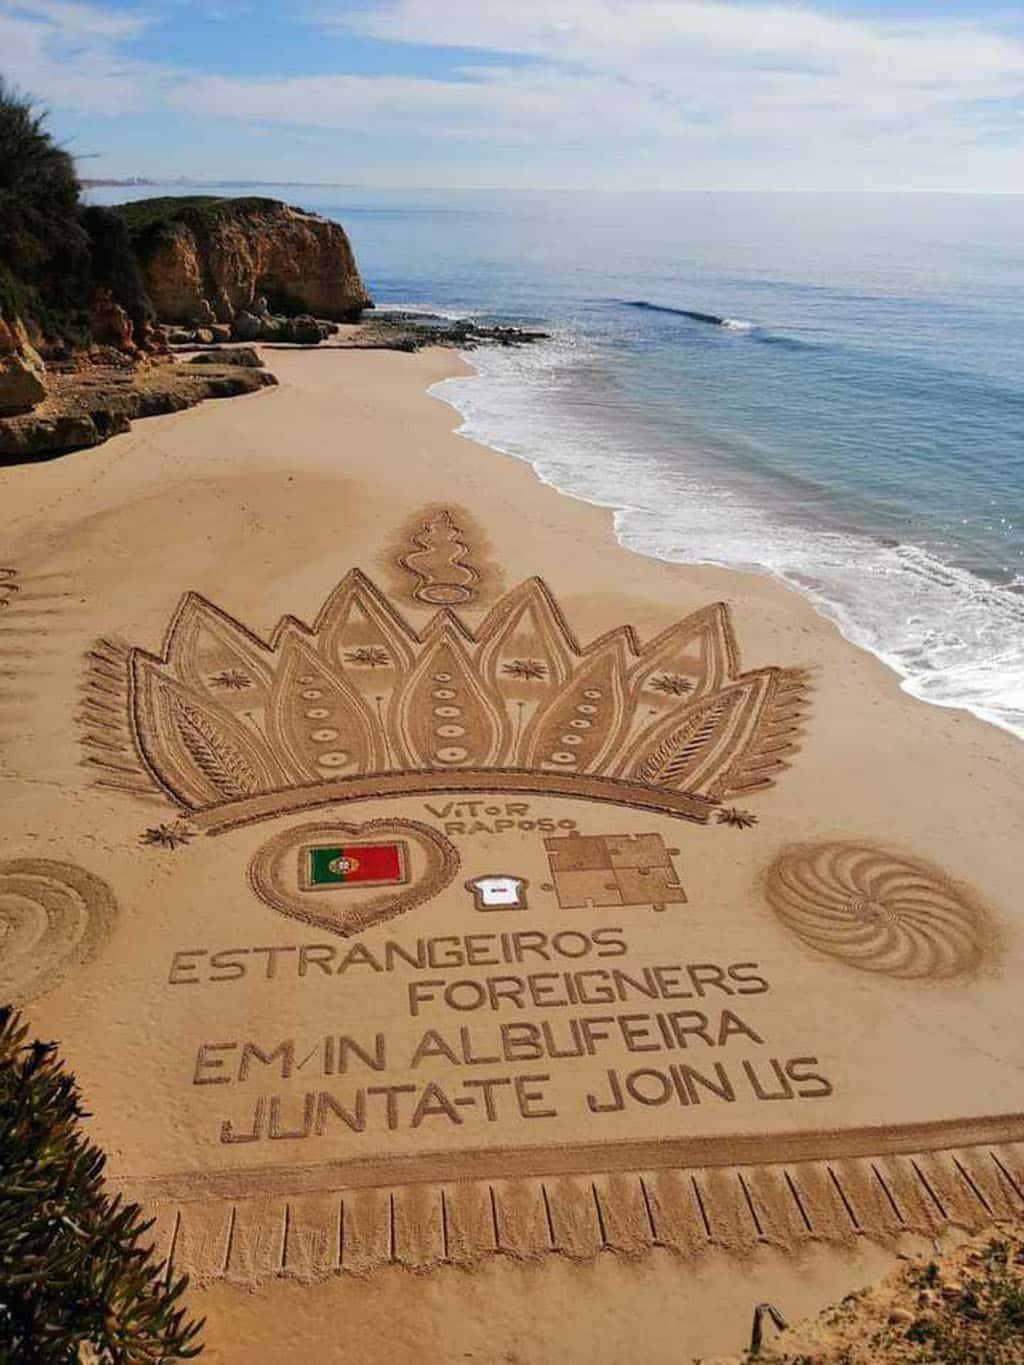 L’invitation à rejoindre Estrangeiros/Foreigners Albufeira – art du sable de Vítor Raposo